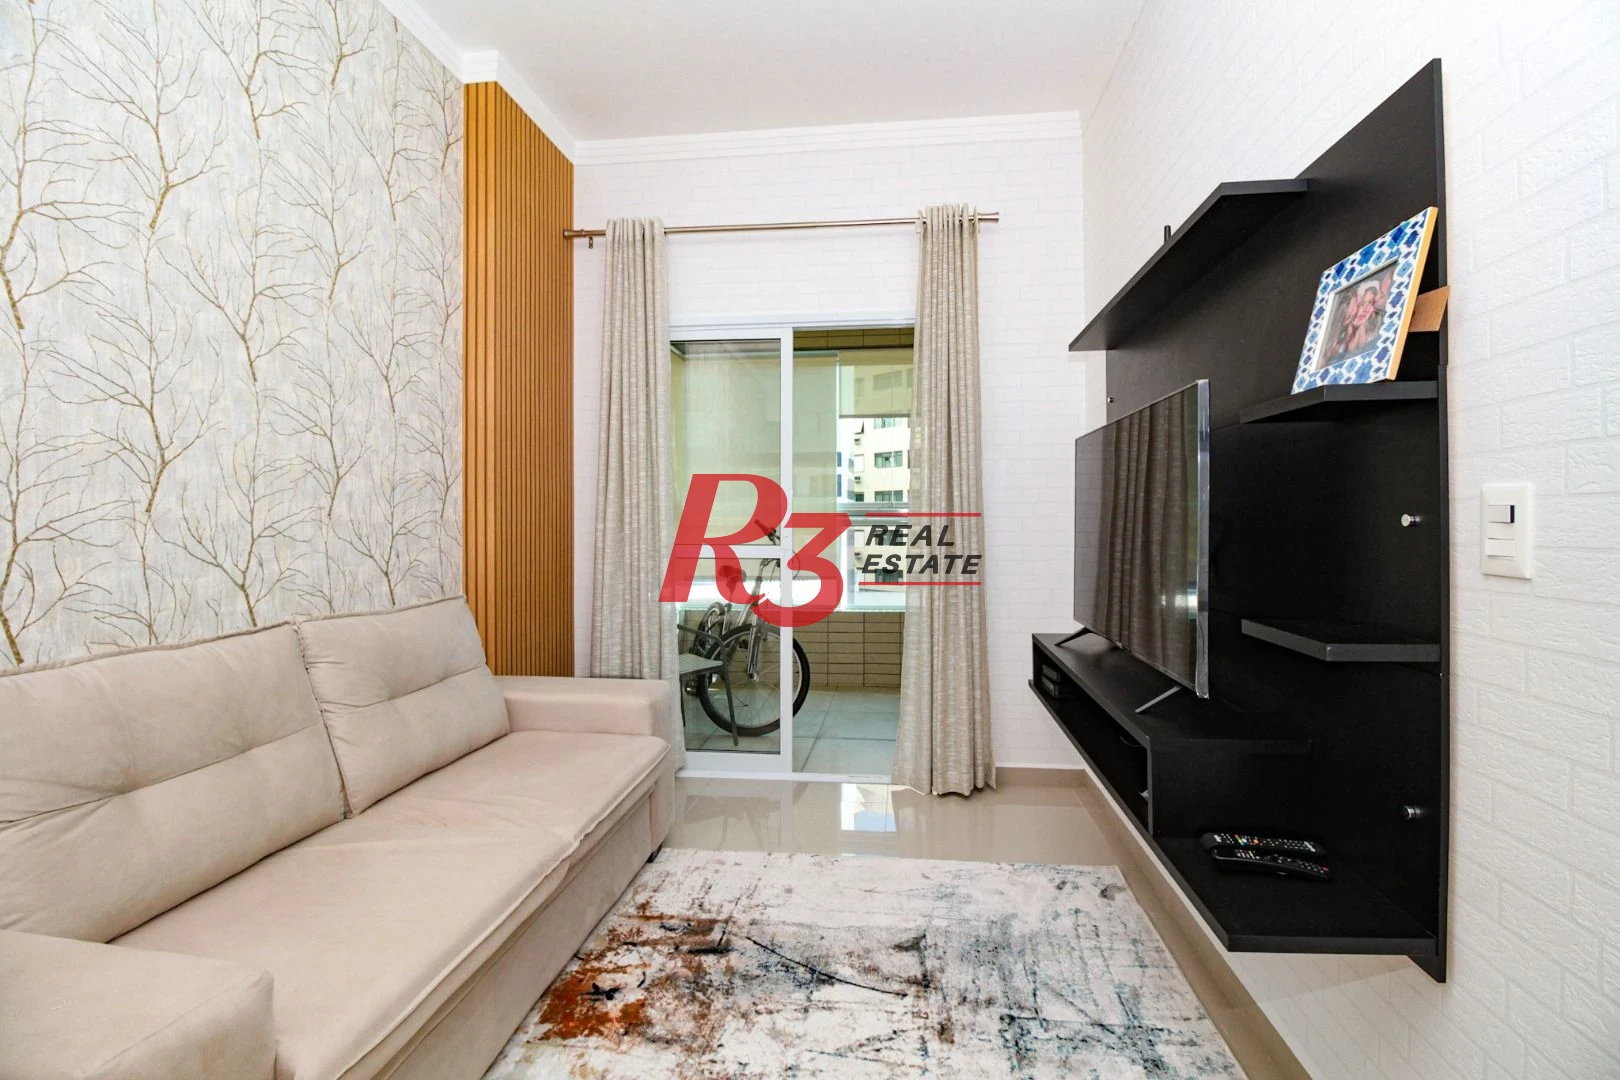 Apartamento à venda, 69 m² por R$ 750.000,00 - Itararé - São Vicente/SP